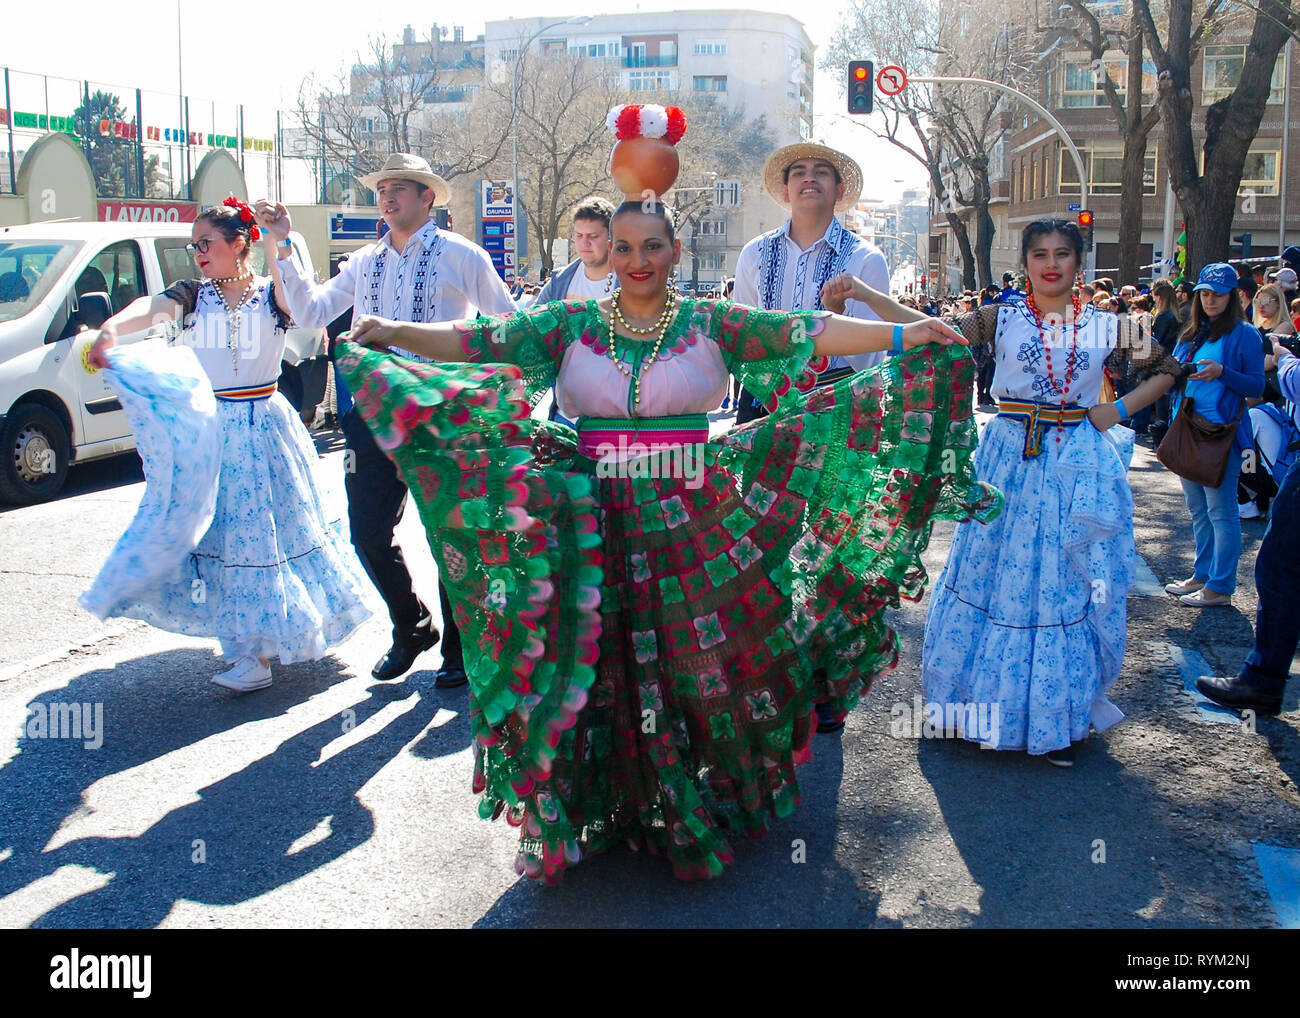 Madrid, Espagne, le 2 mars 2019 : défilé carnavalesque, membres du groupe de danse paraguayenne en spectacle avec costumes traditionnels Banque D'Images